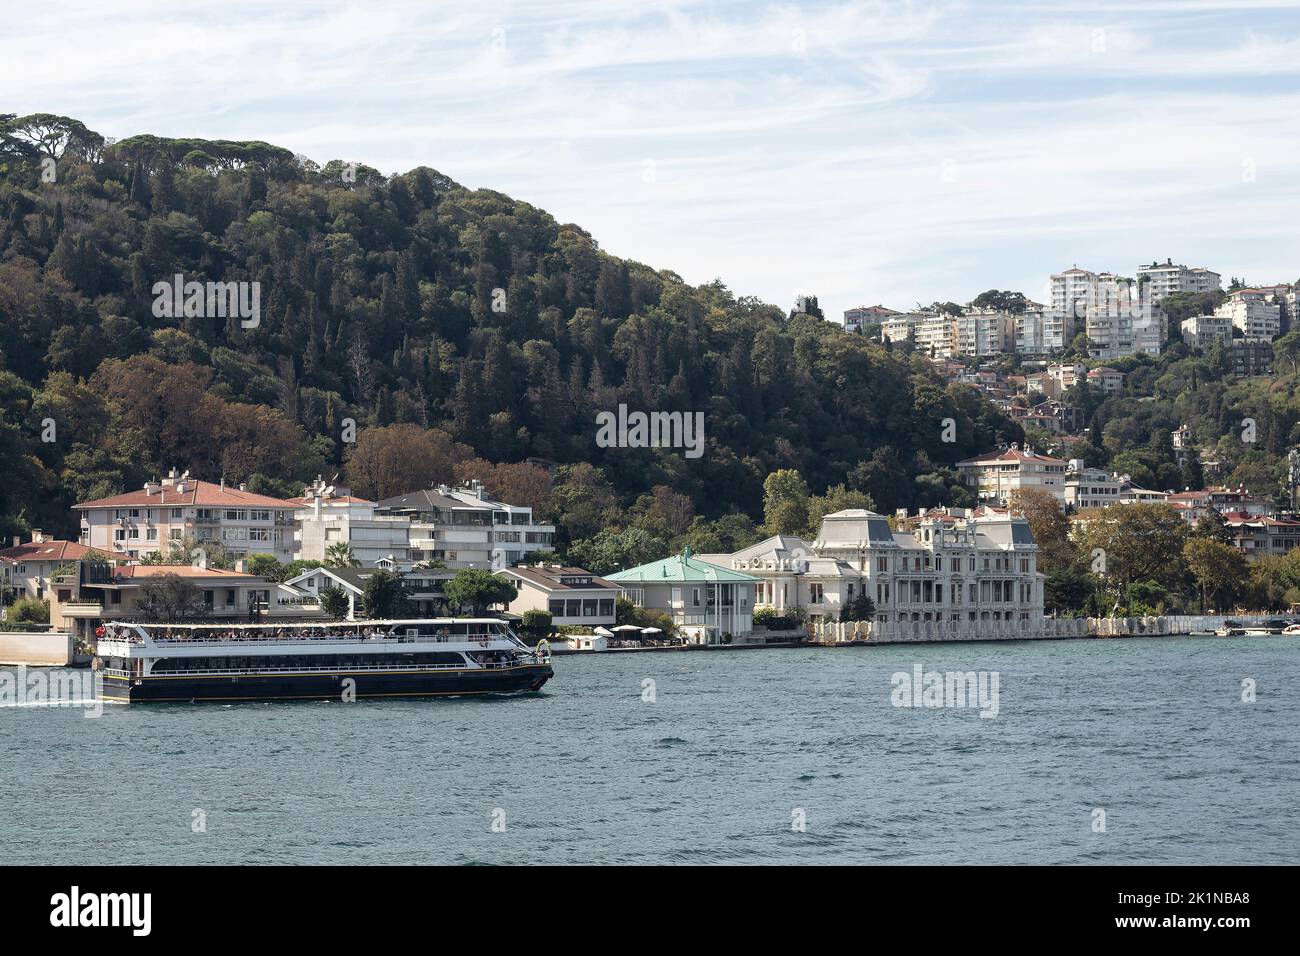 Vista di uno yacht da crociera sul Bosforo e il quartiere di Bebek sul lato europeo di Istanbul. E' una giornata estiva di sole. Bella scena di viaggio. Foto Stock